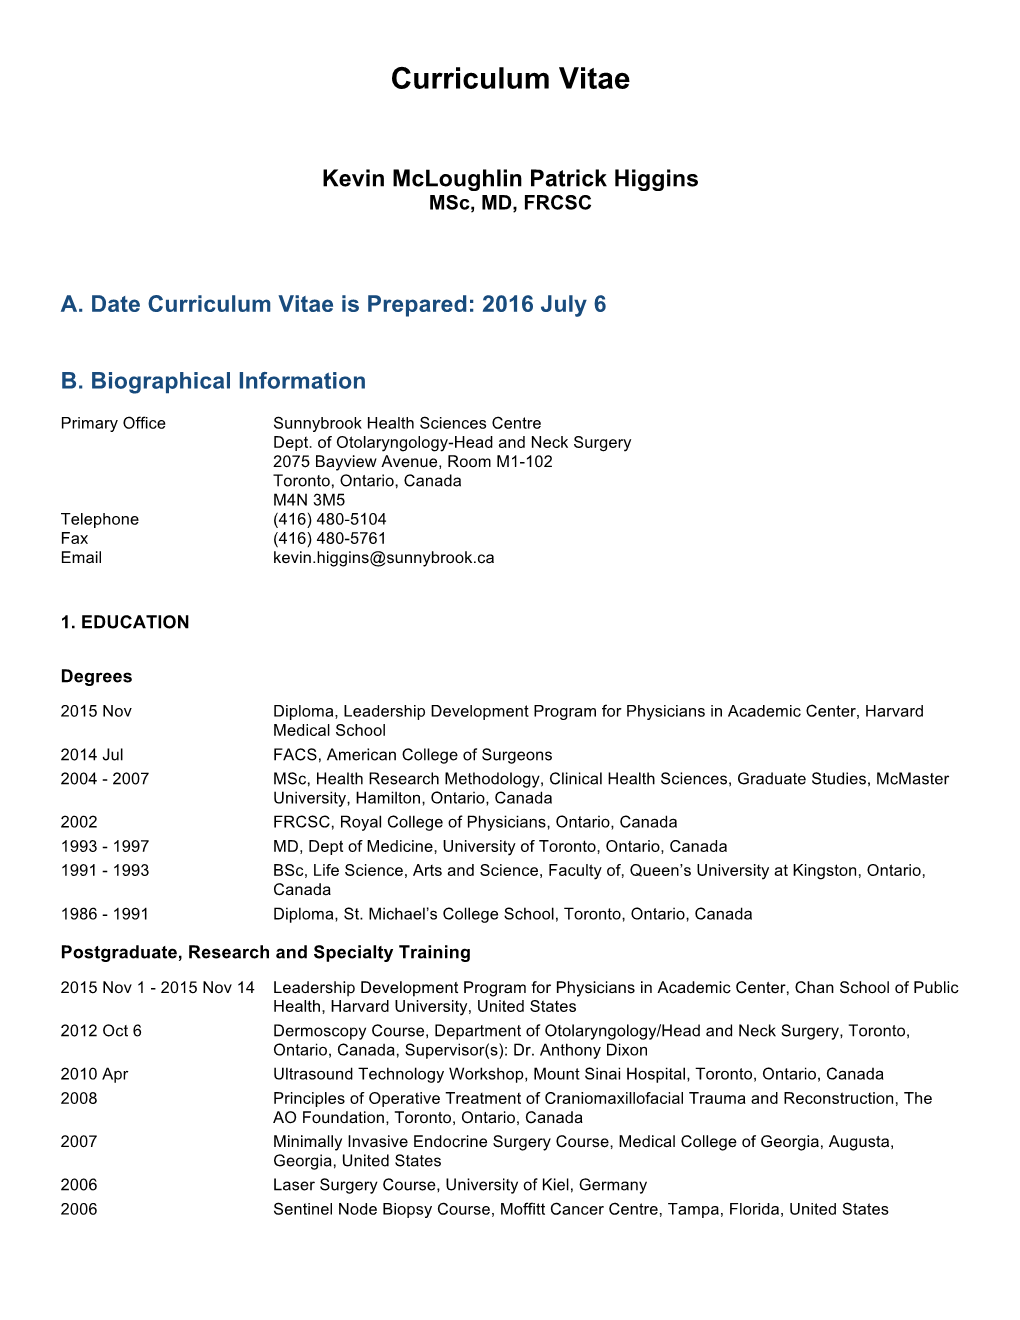 Download Dr. Higgin's Full CV